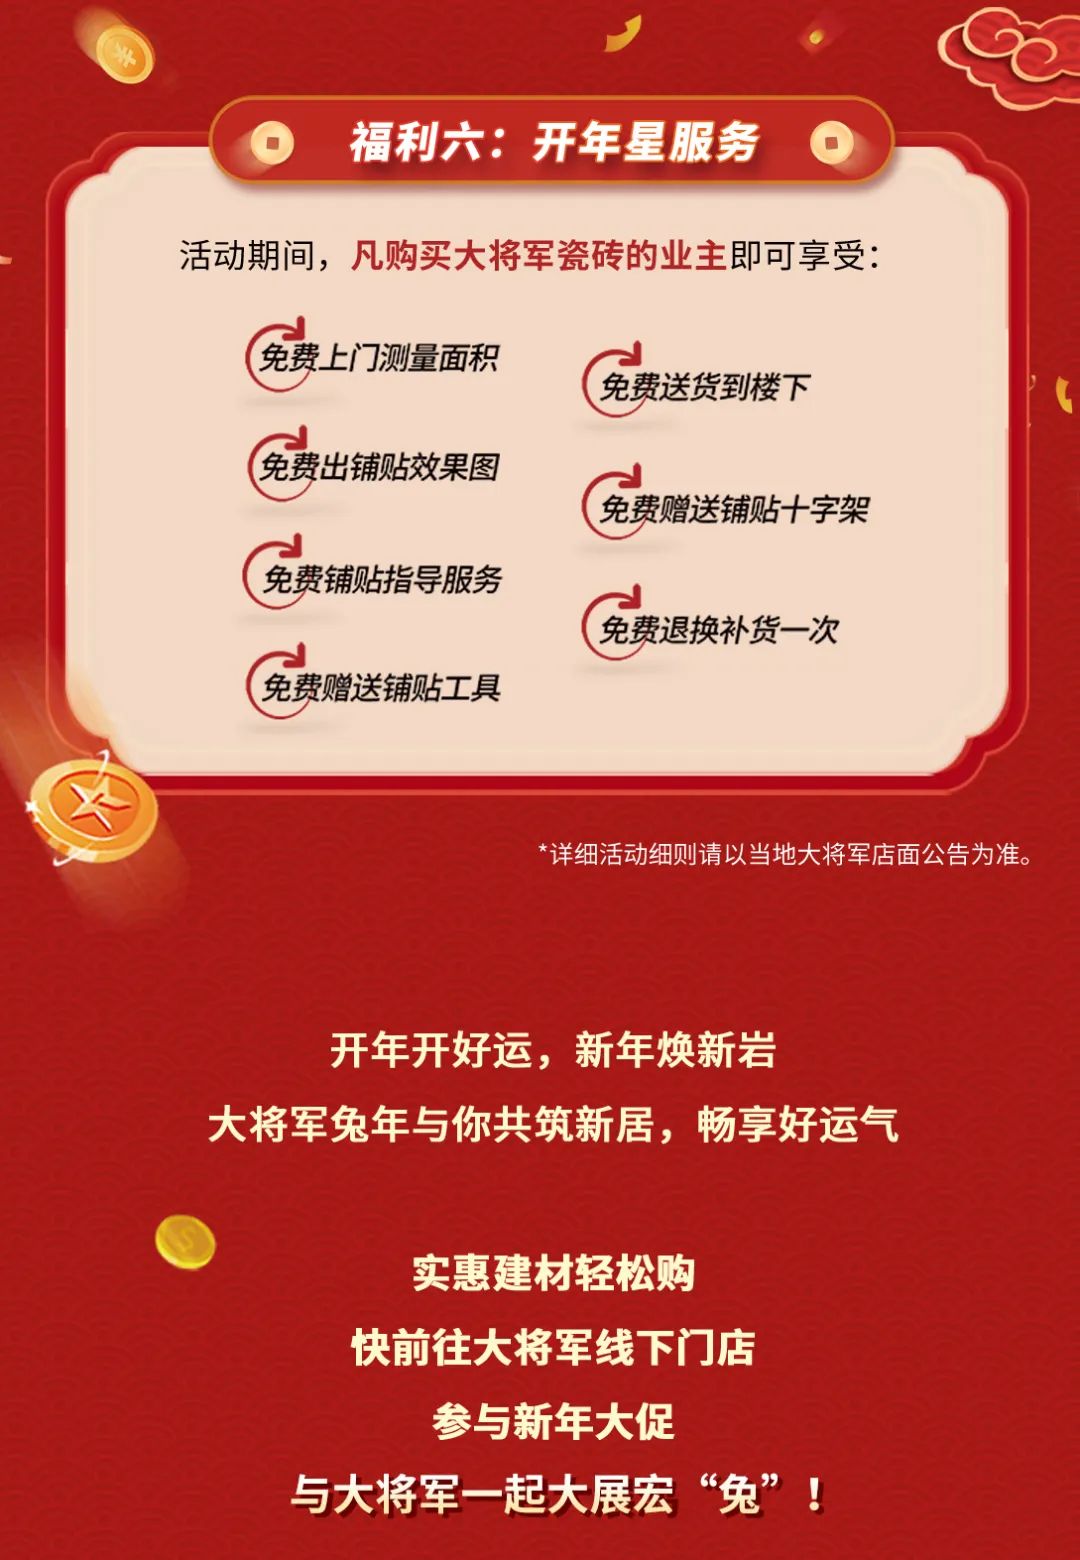 将军祝新春 开年筑新家丨bob体育官方app下载
开年促销活动火热进行中(图5)